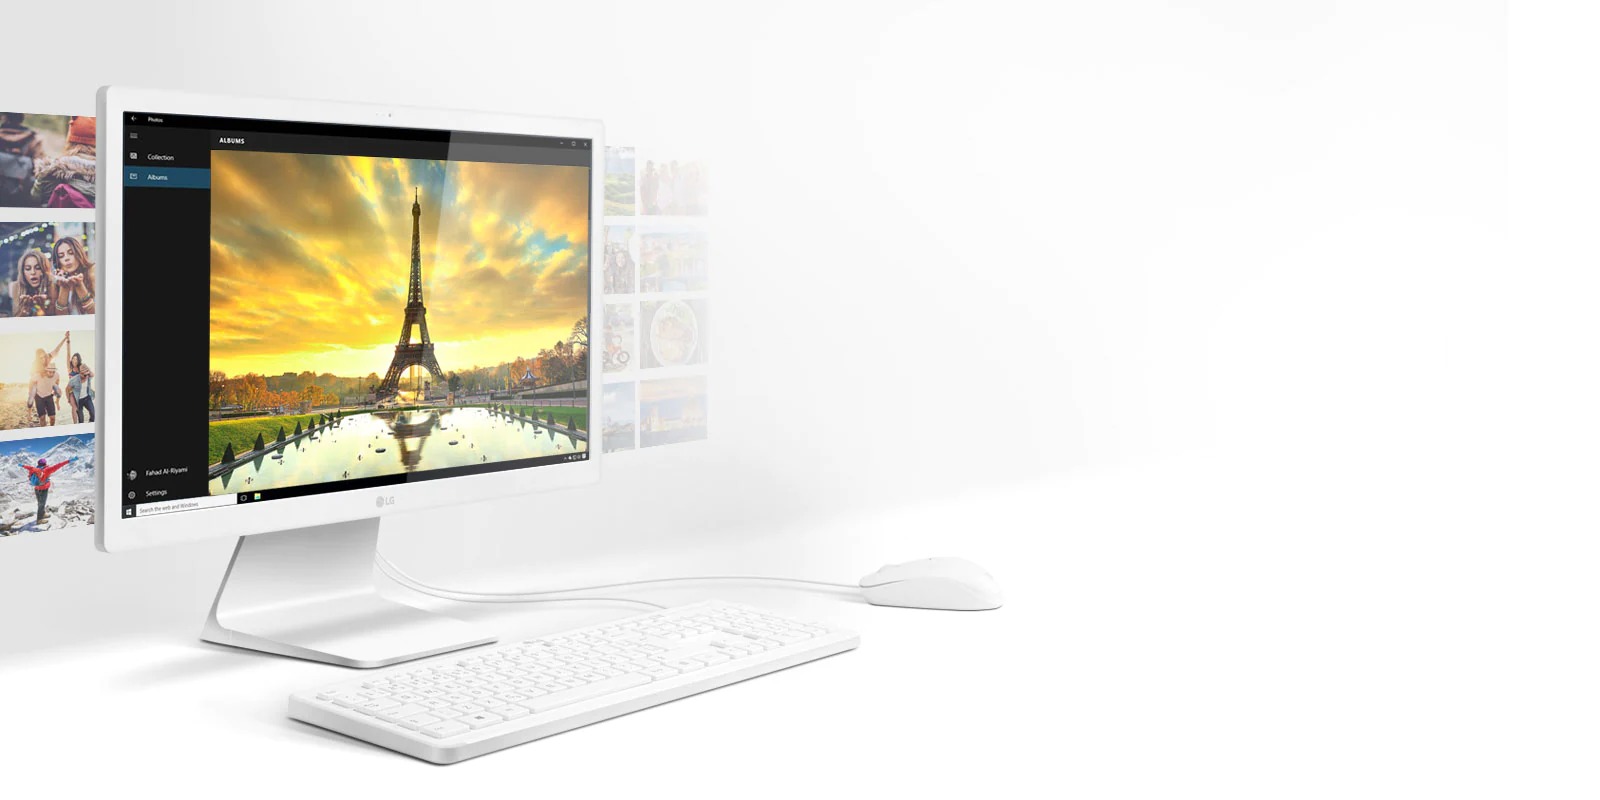 Novo computador LG All in One: definições de multitarefas atualizadas com sucesso!